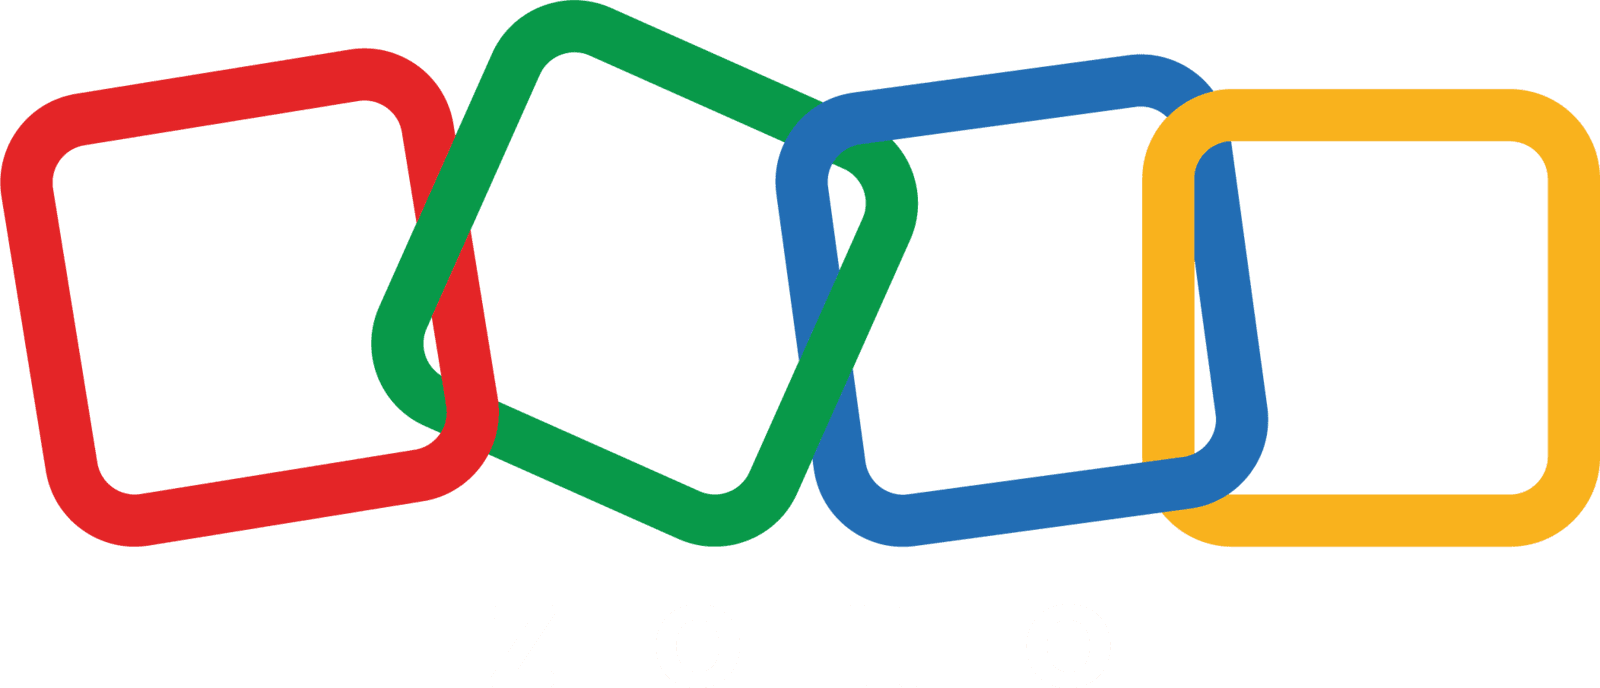 Conjunto de aplicaciones desarrolladas por Zoho